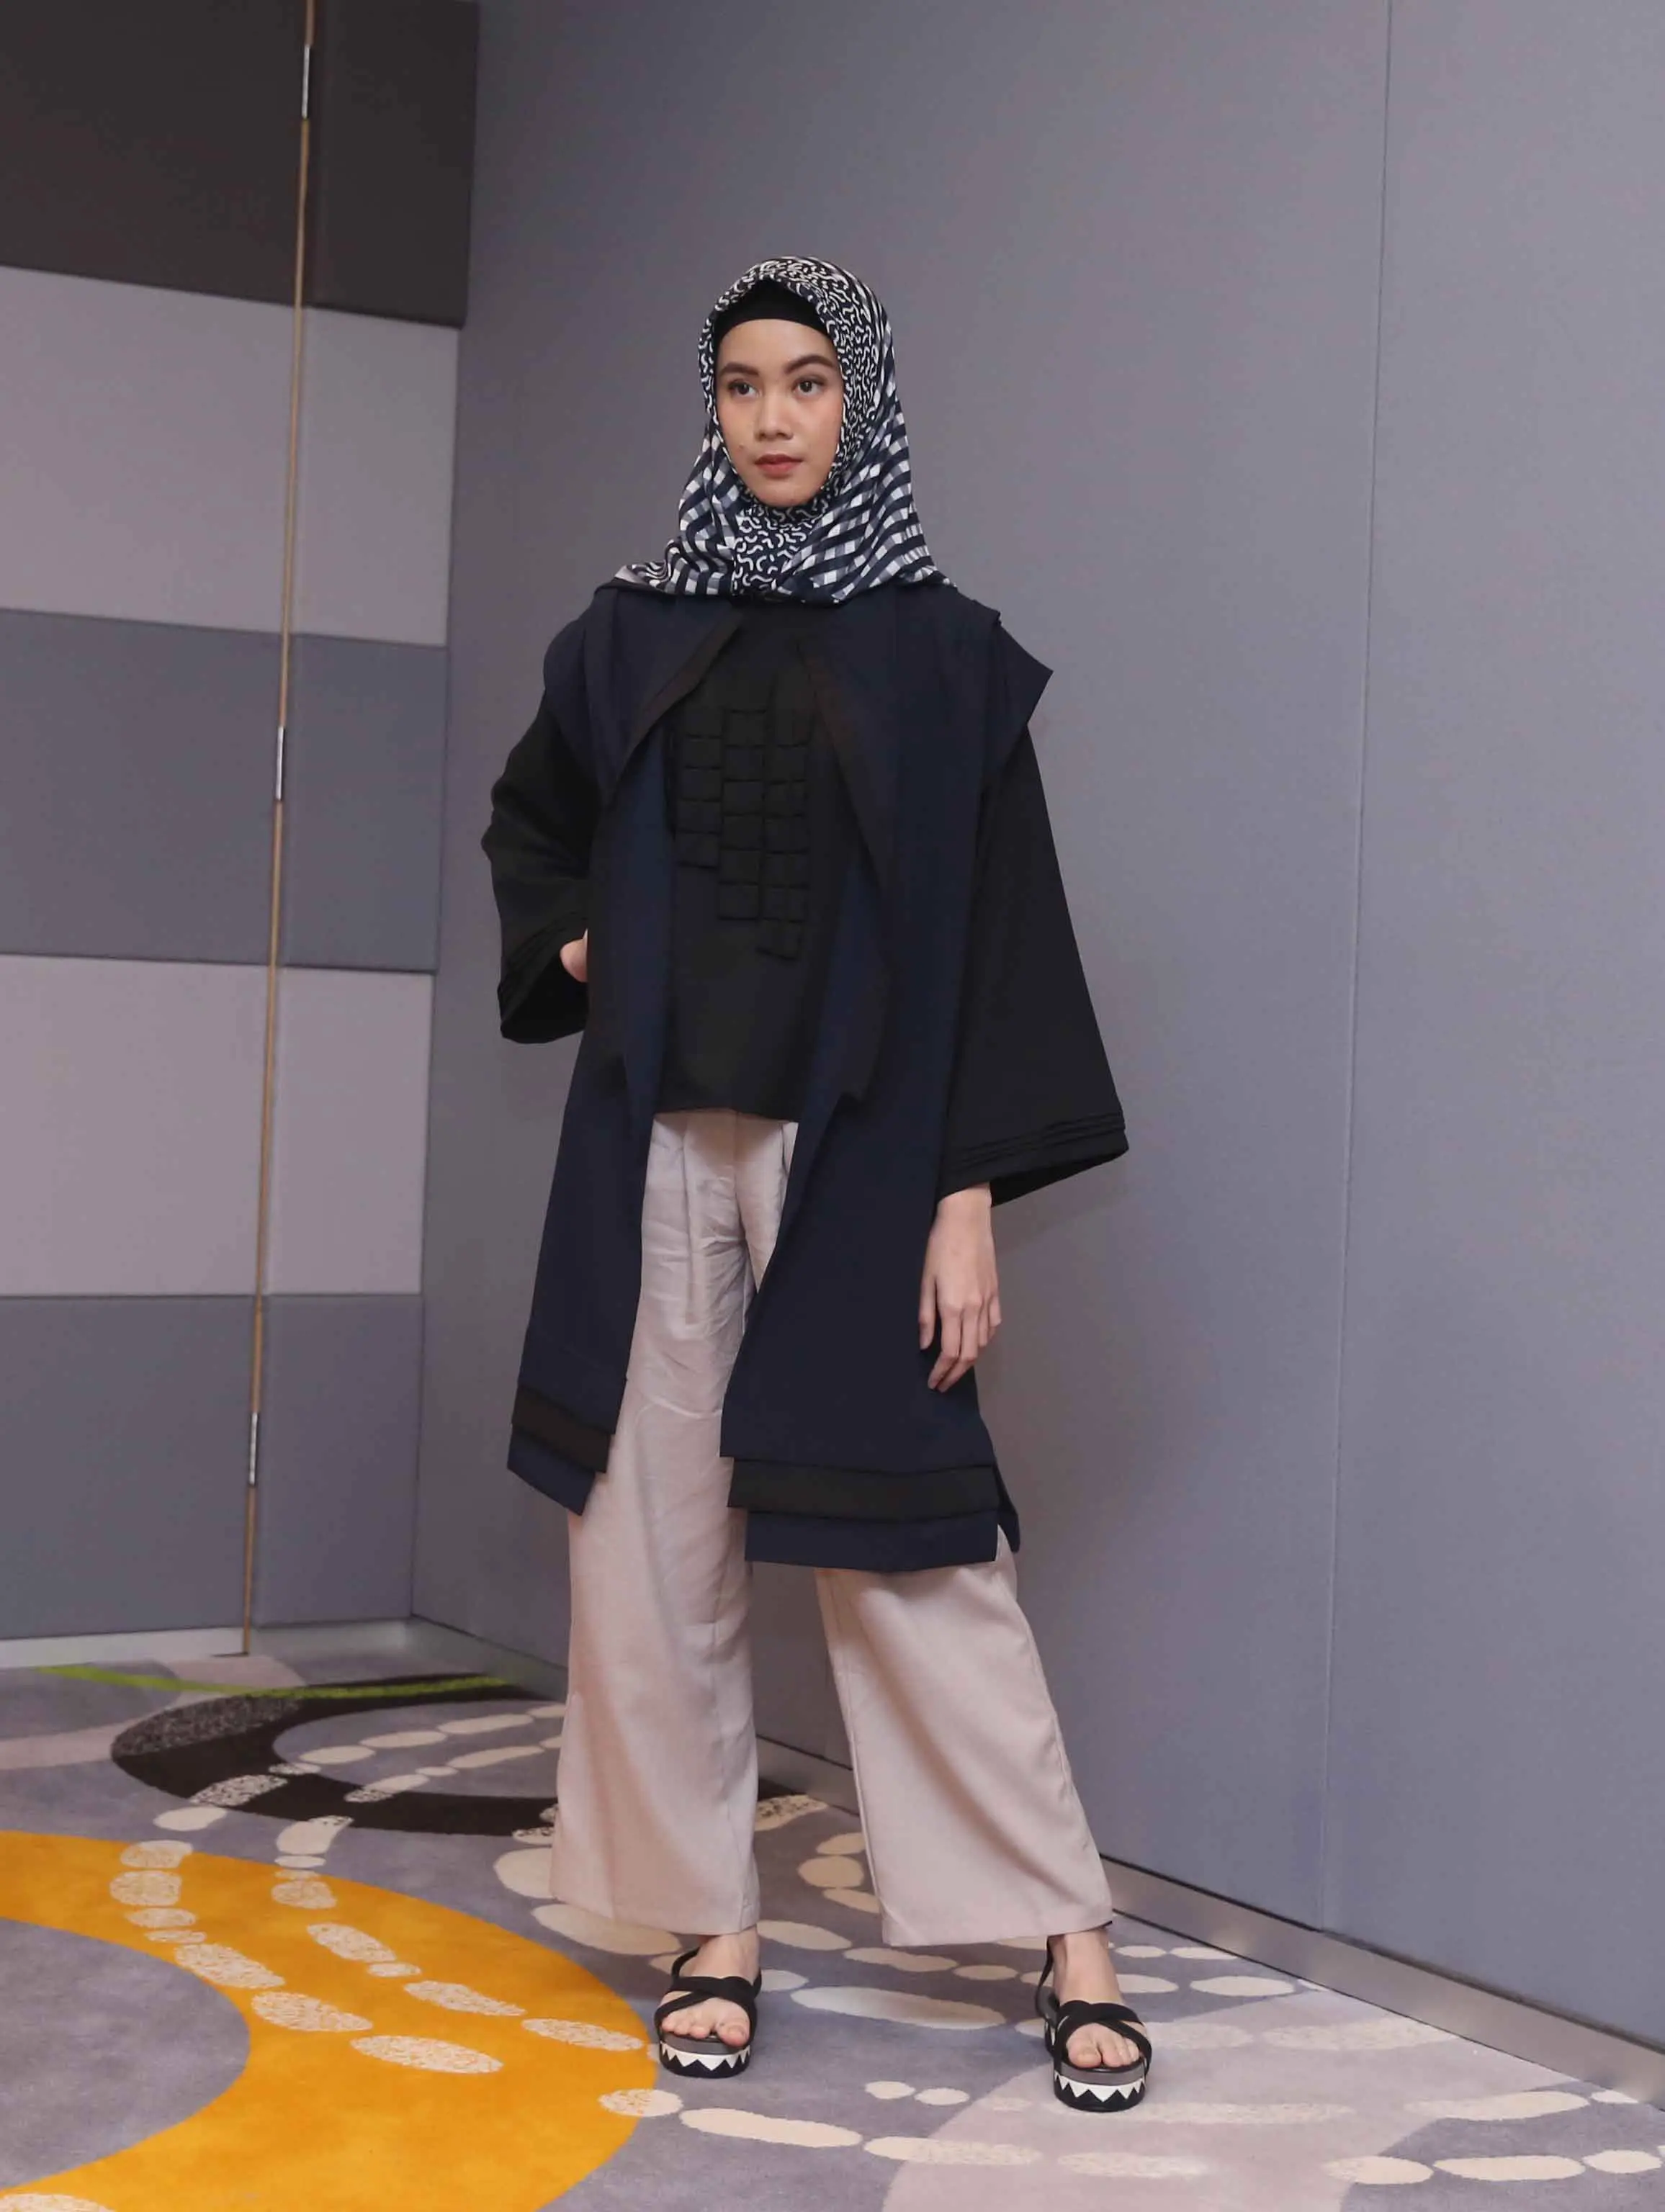 Hijab Festive Week rangkaian kegiatan menyambut Ramadan. (Nurwahyunan / Bintang.com)